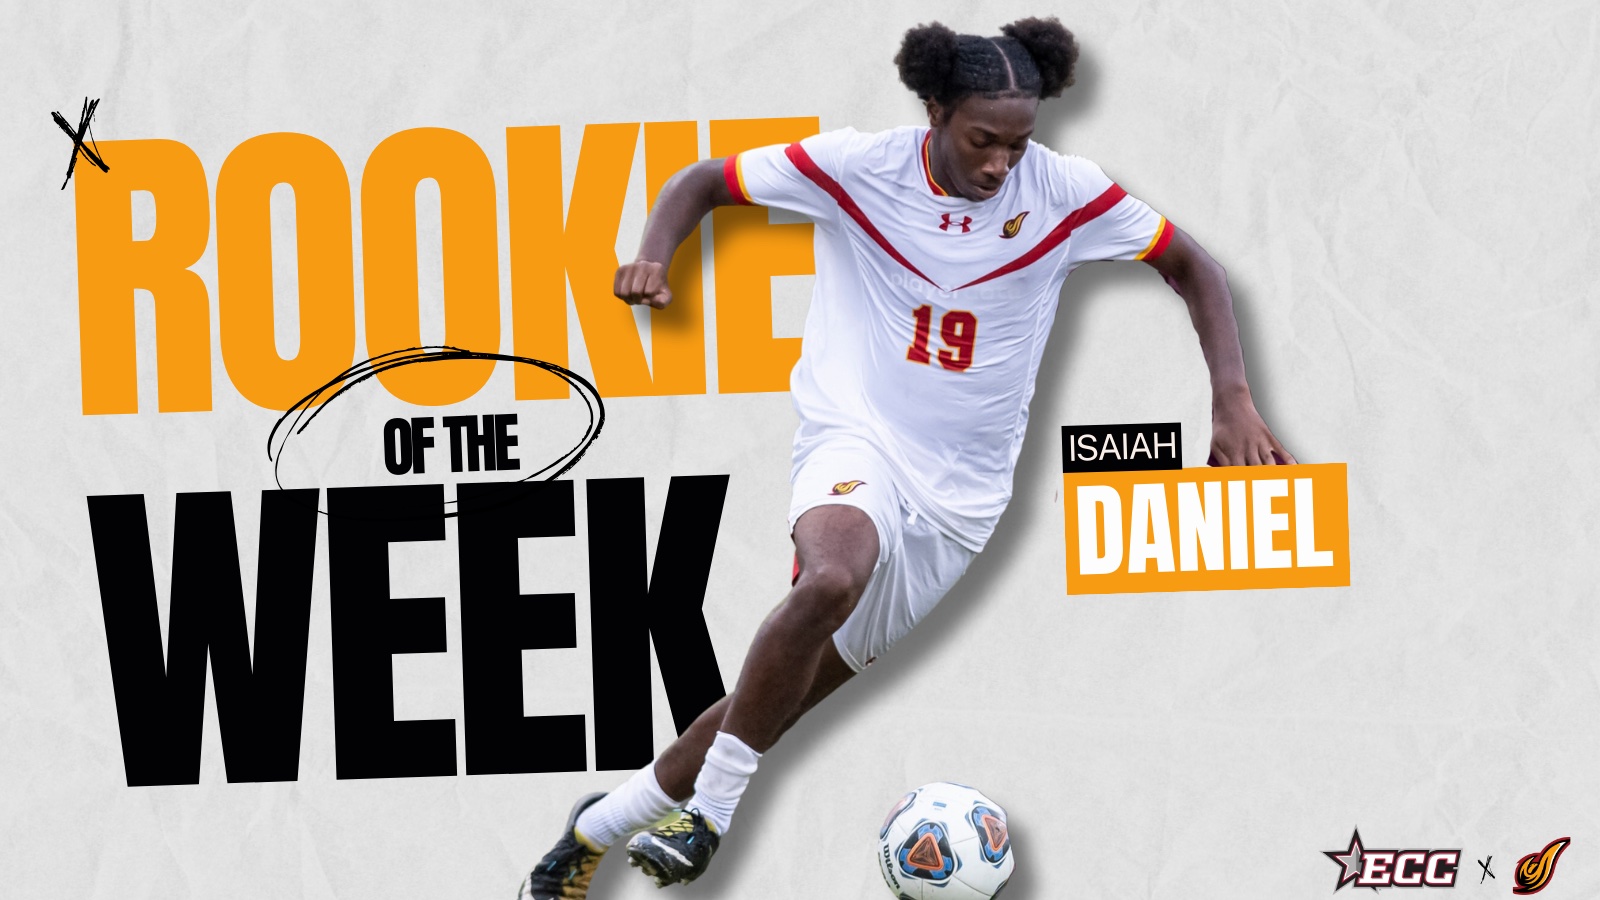 Isaiah Daniel Named ECC Rookie of the Week